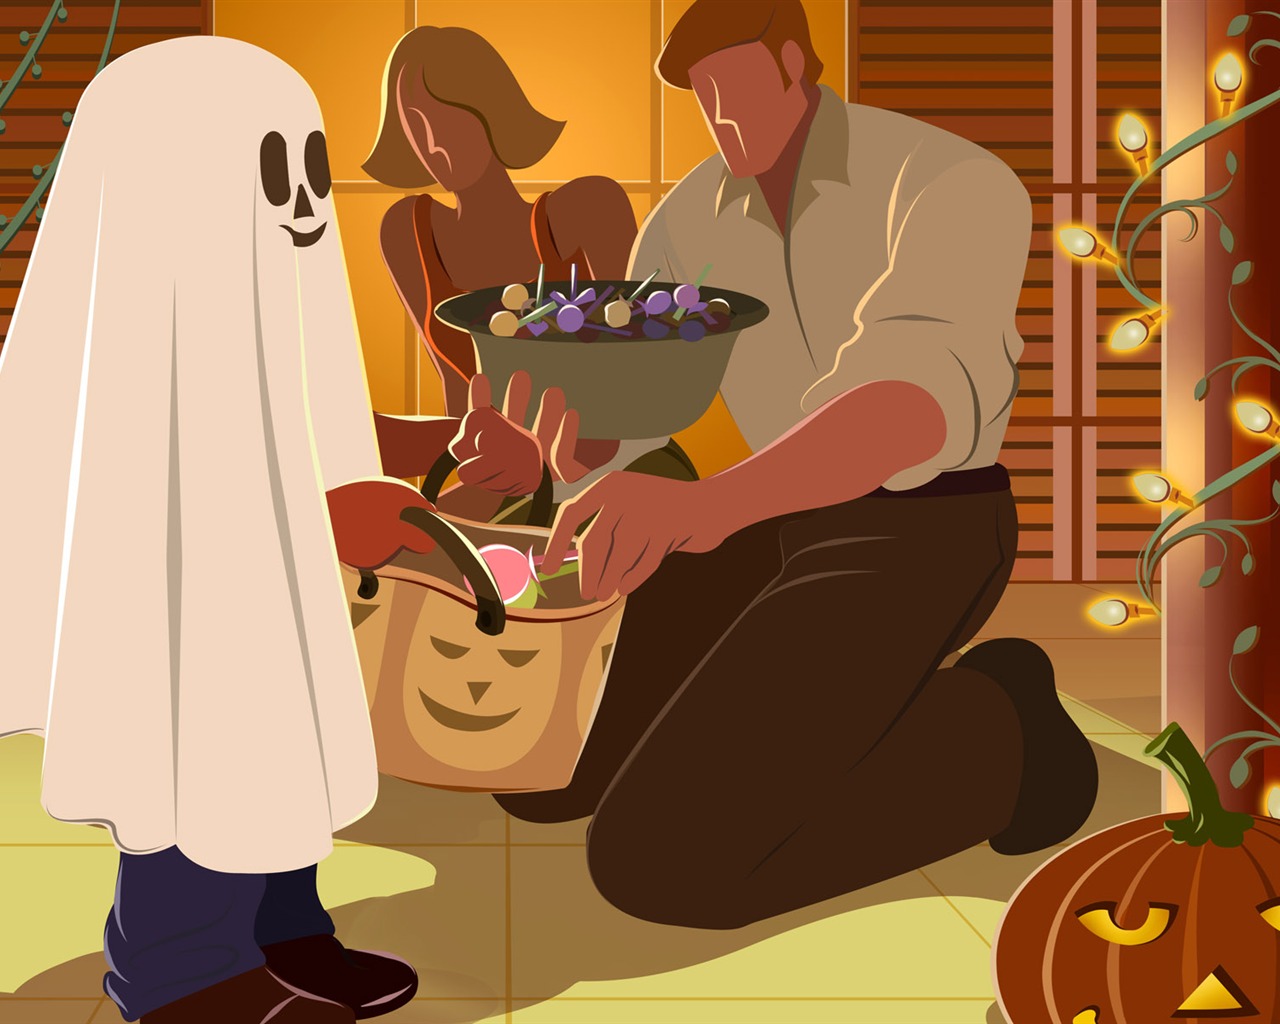 Fondos de Halloween temáticos (5) #17 - 1280x1024